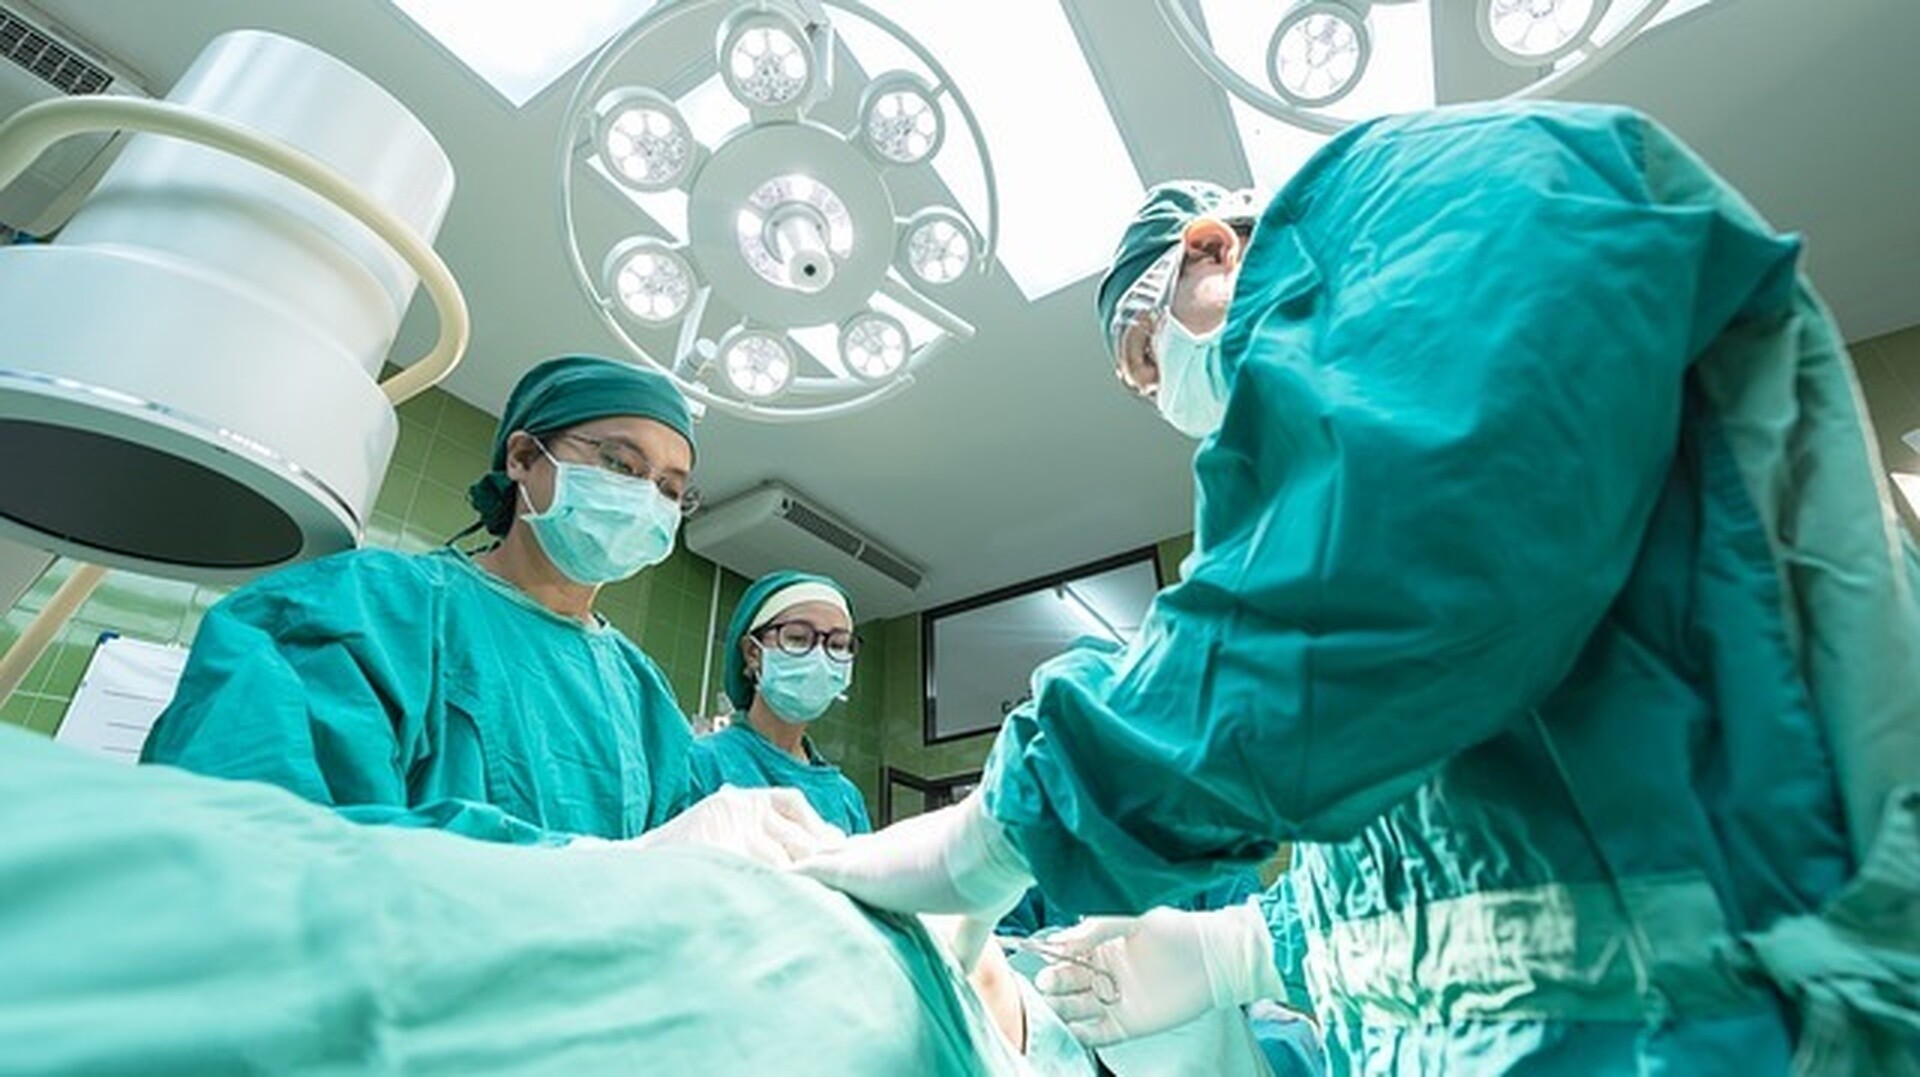 Πράγα: Νοσοκομείο μπέρδεψε τις ασθενείς - Υπέβαλε έγκυο σε άμβλωση ενώ είχε πάει για τακτικό έλεγχο